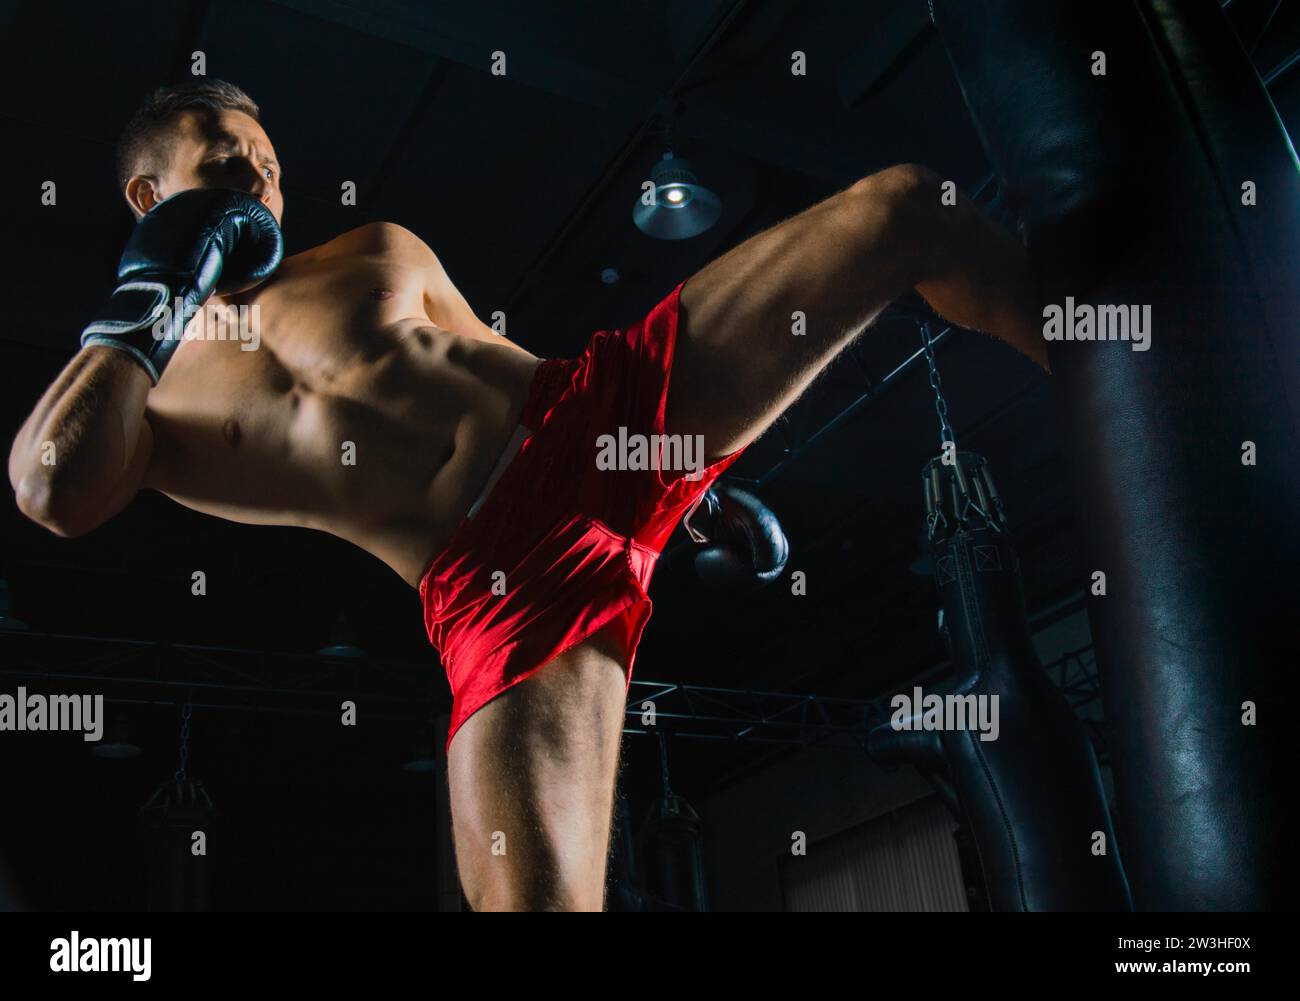 Sportif professionnel des arts martiaux mixtes se tient après le combat gagné près du sac et regarde de manière menaçante son prochain adversaire Banque D'Images